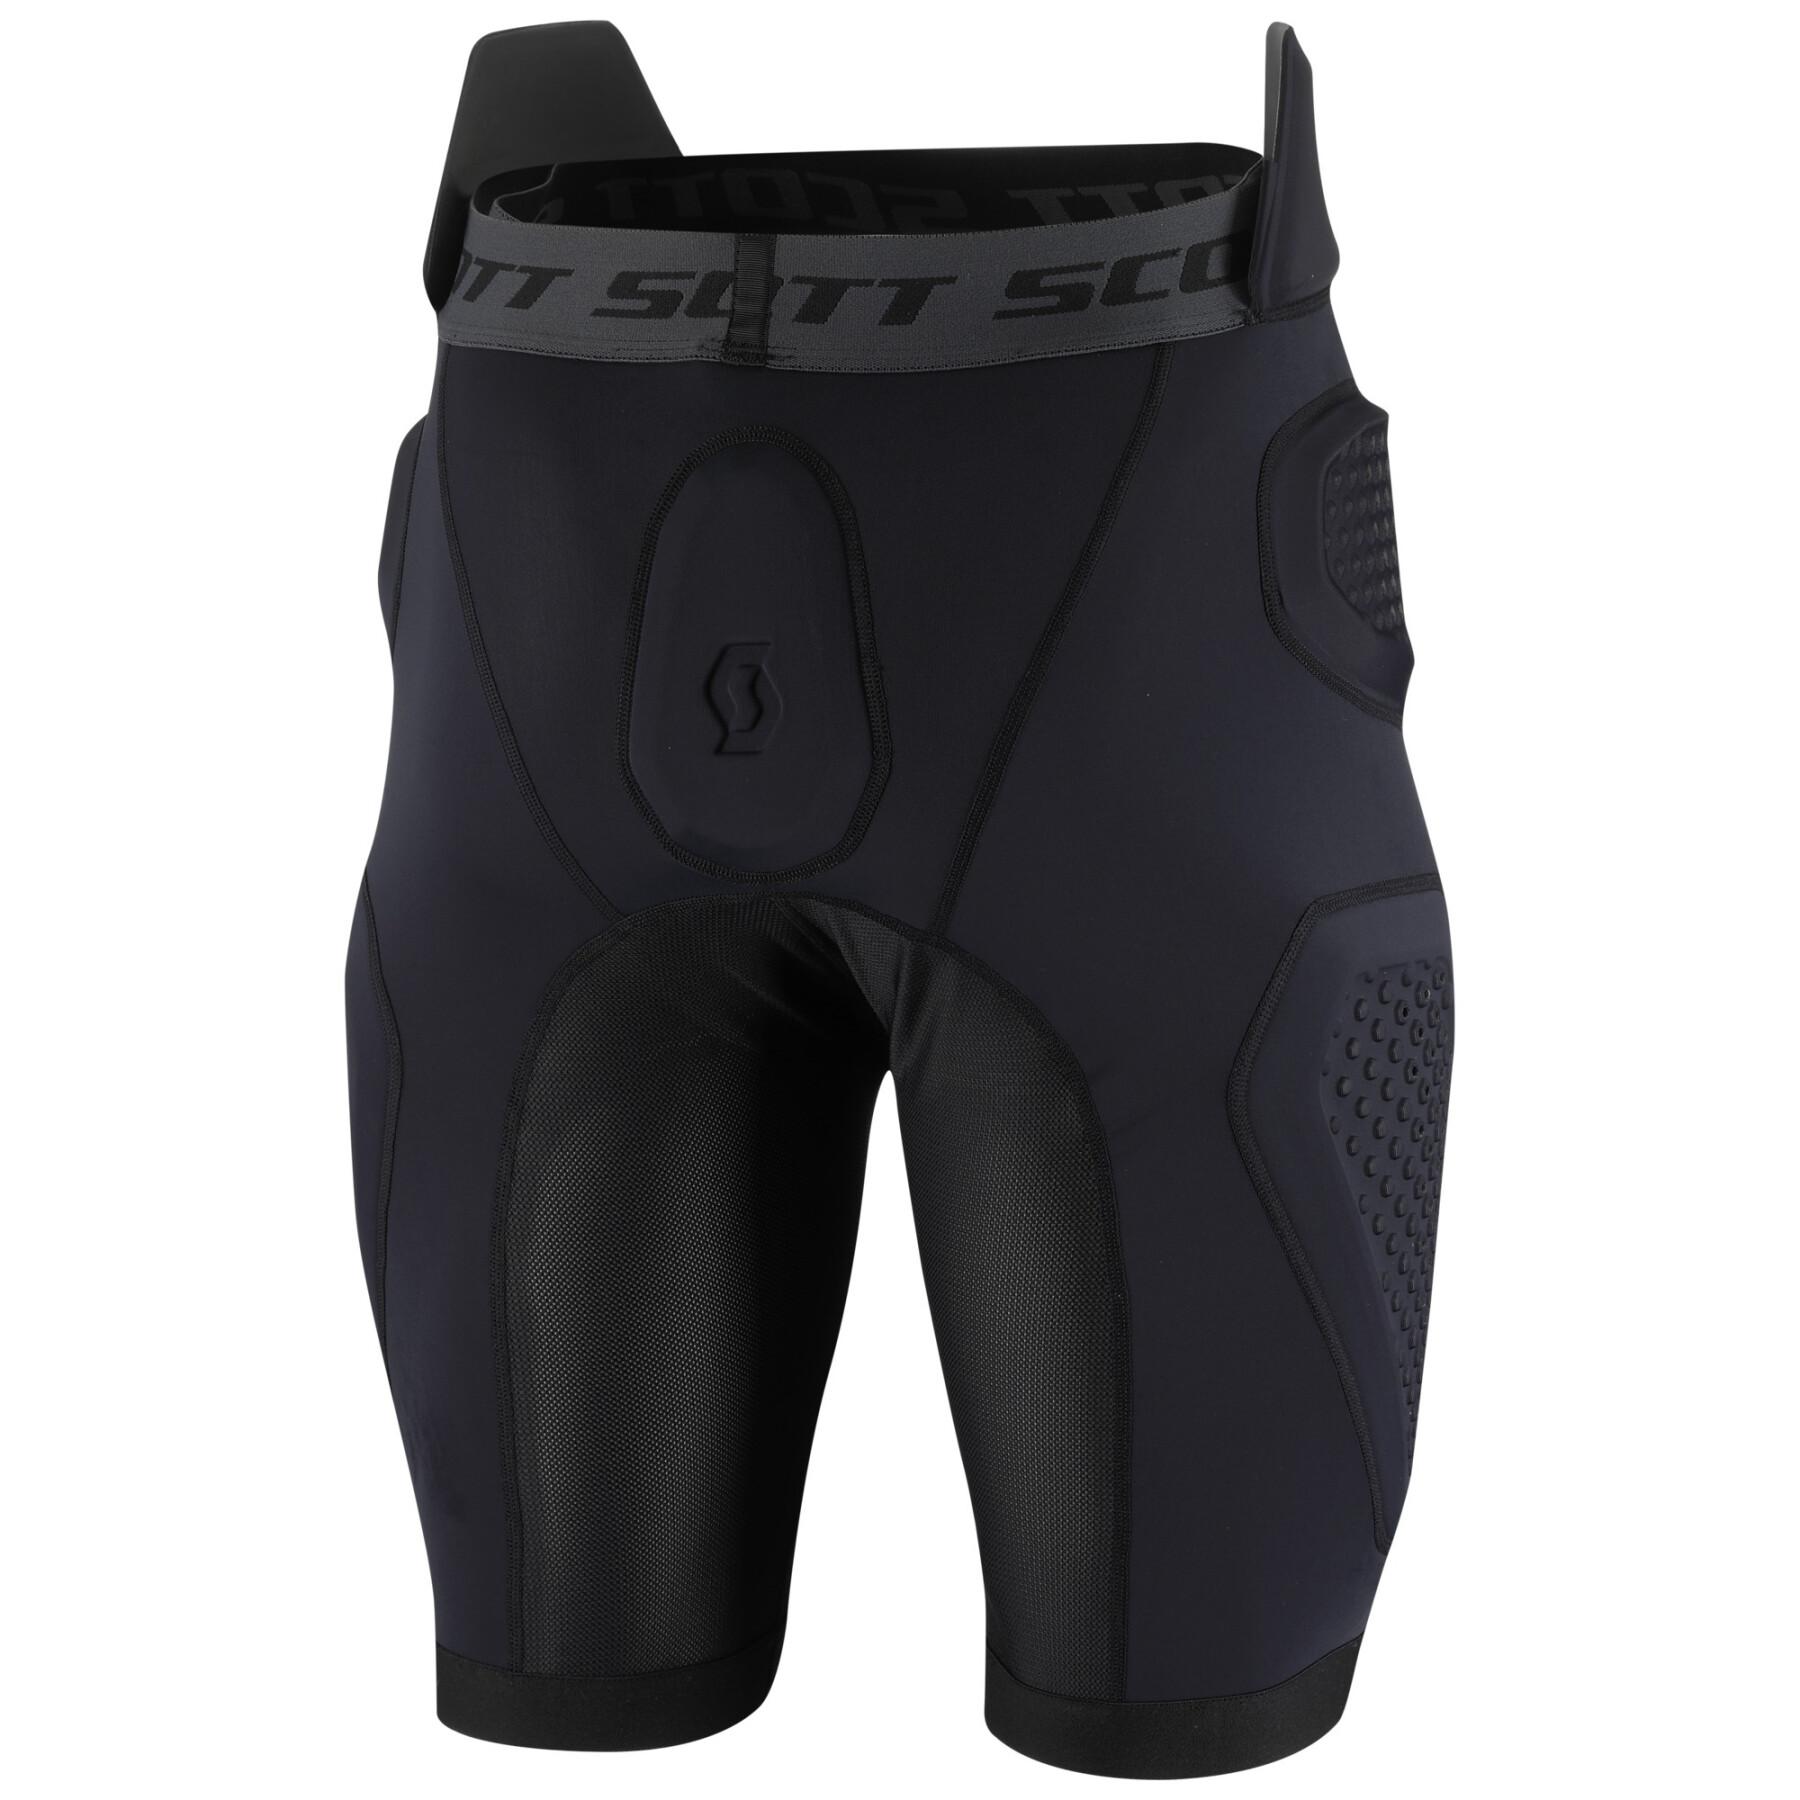 Pantalones cortos de protección Scott softcon air